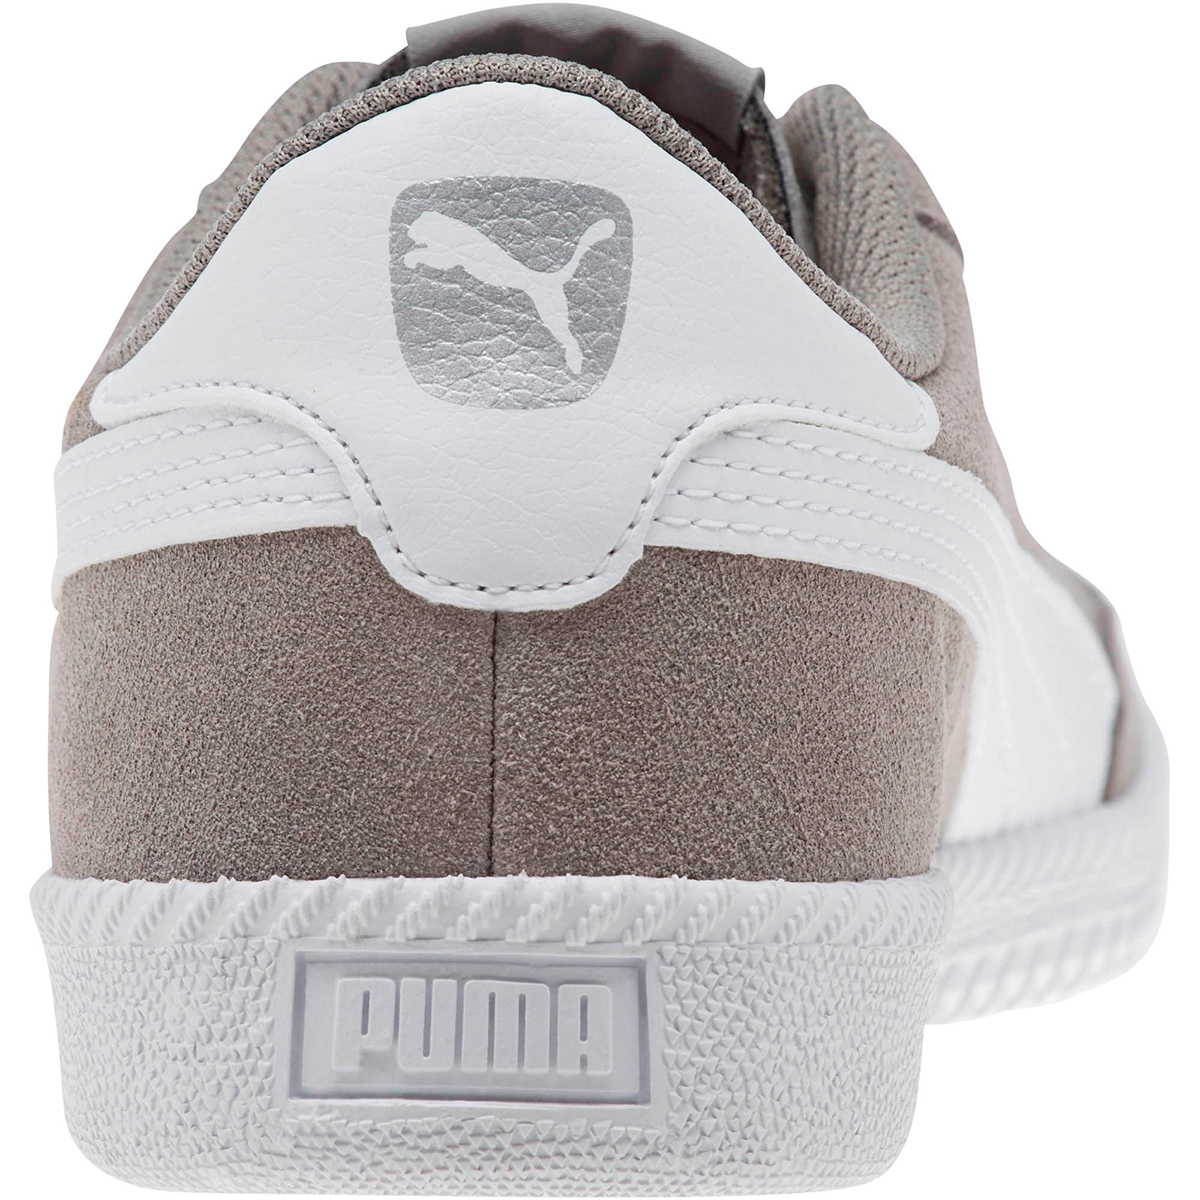 Puma Astro Cup Herren Sneaker Low-Top grau 364423 09